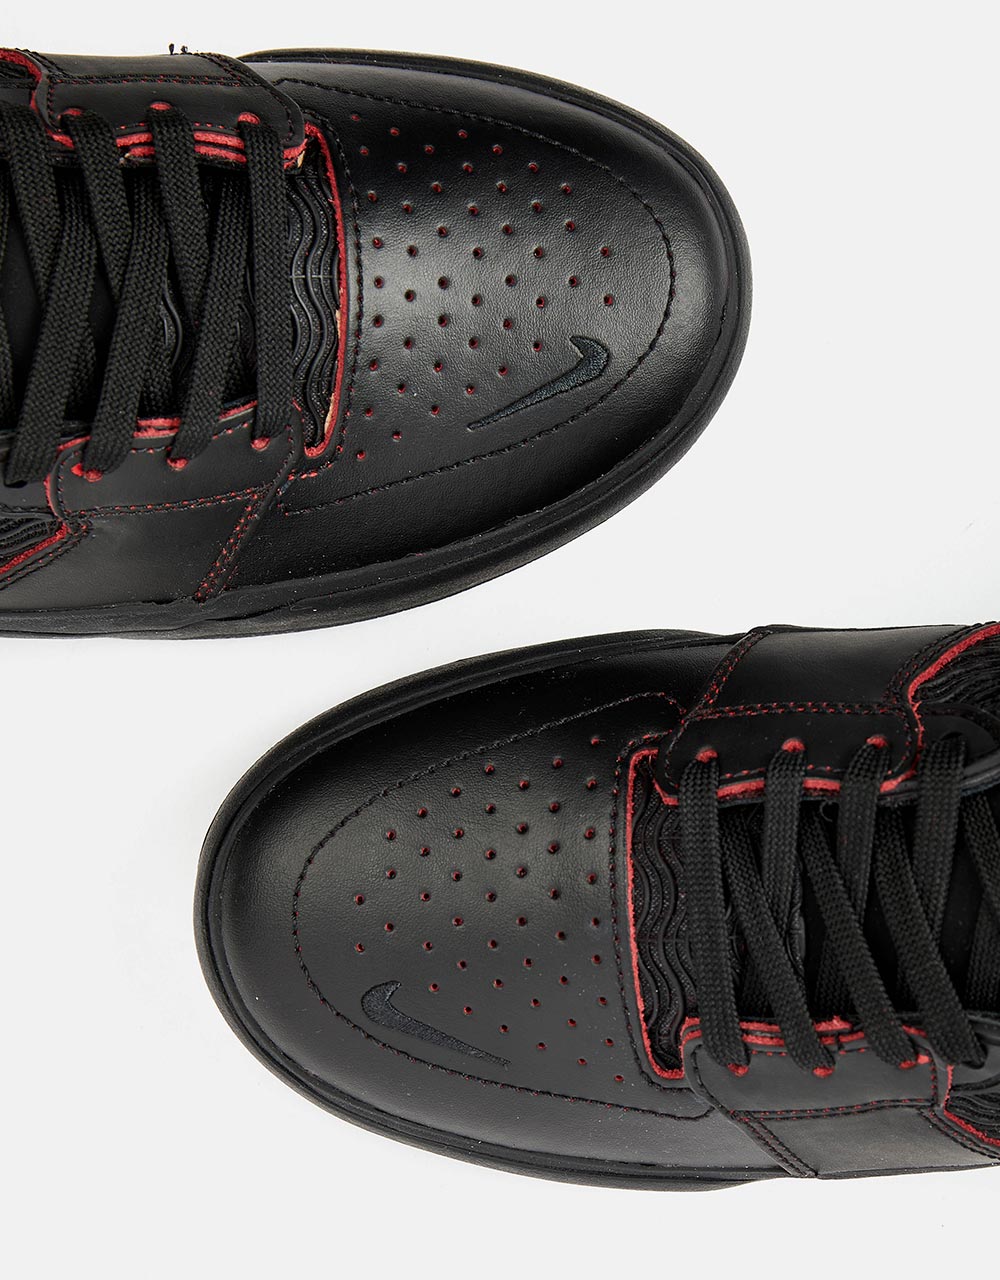 Nike SB Ishod Premium Skate Shoes - Black/University Red-Black-Black